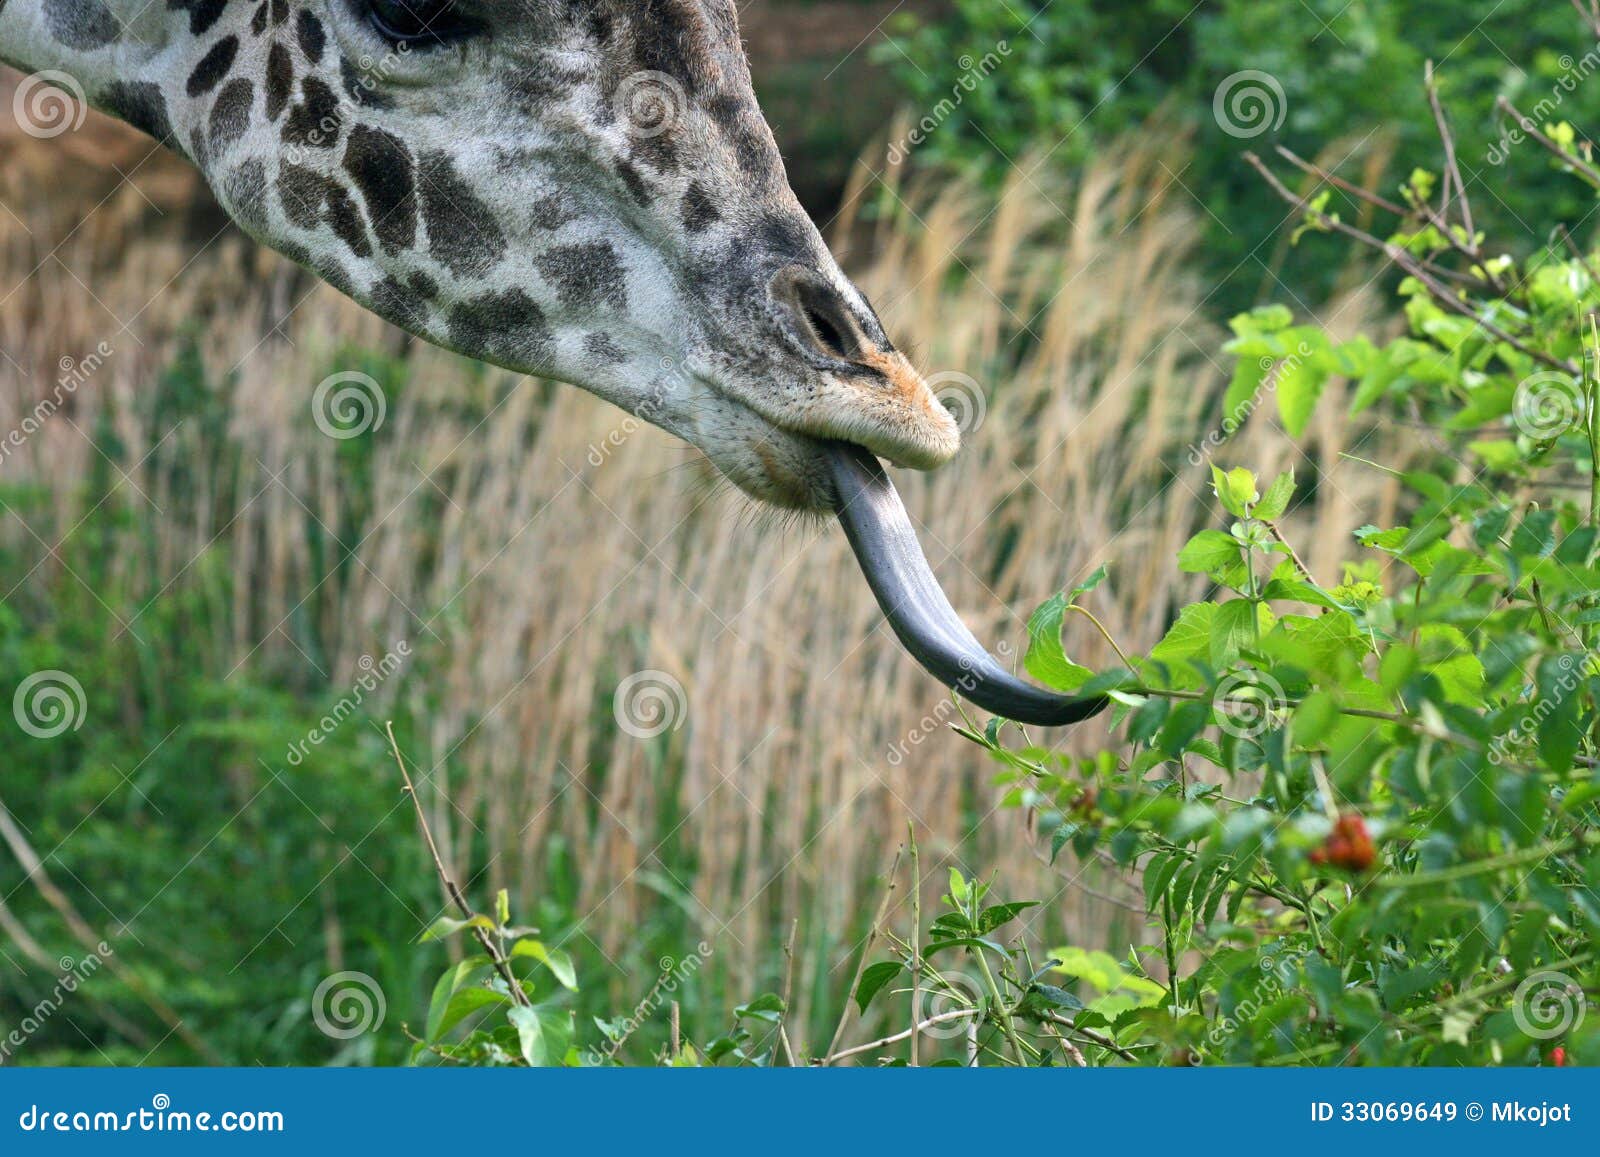 Длинный язык жирафа. Язык жирафа. Длина языка жирафа. Жираф с высунутым языком.